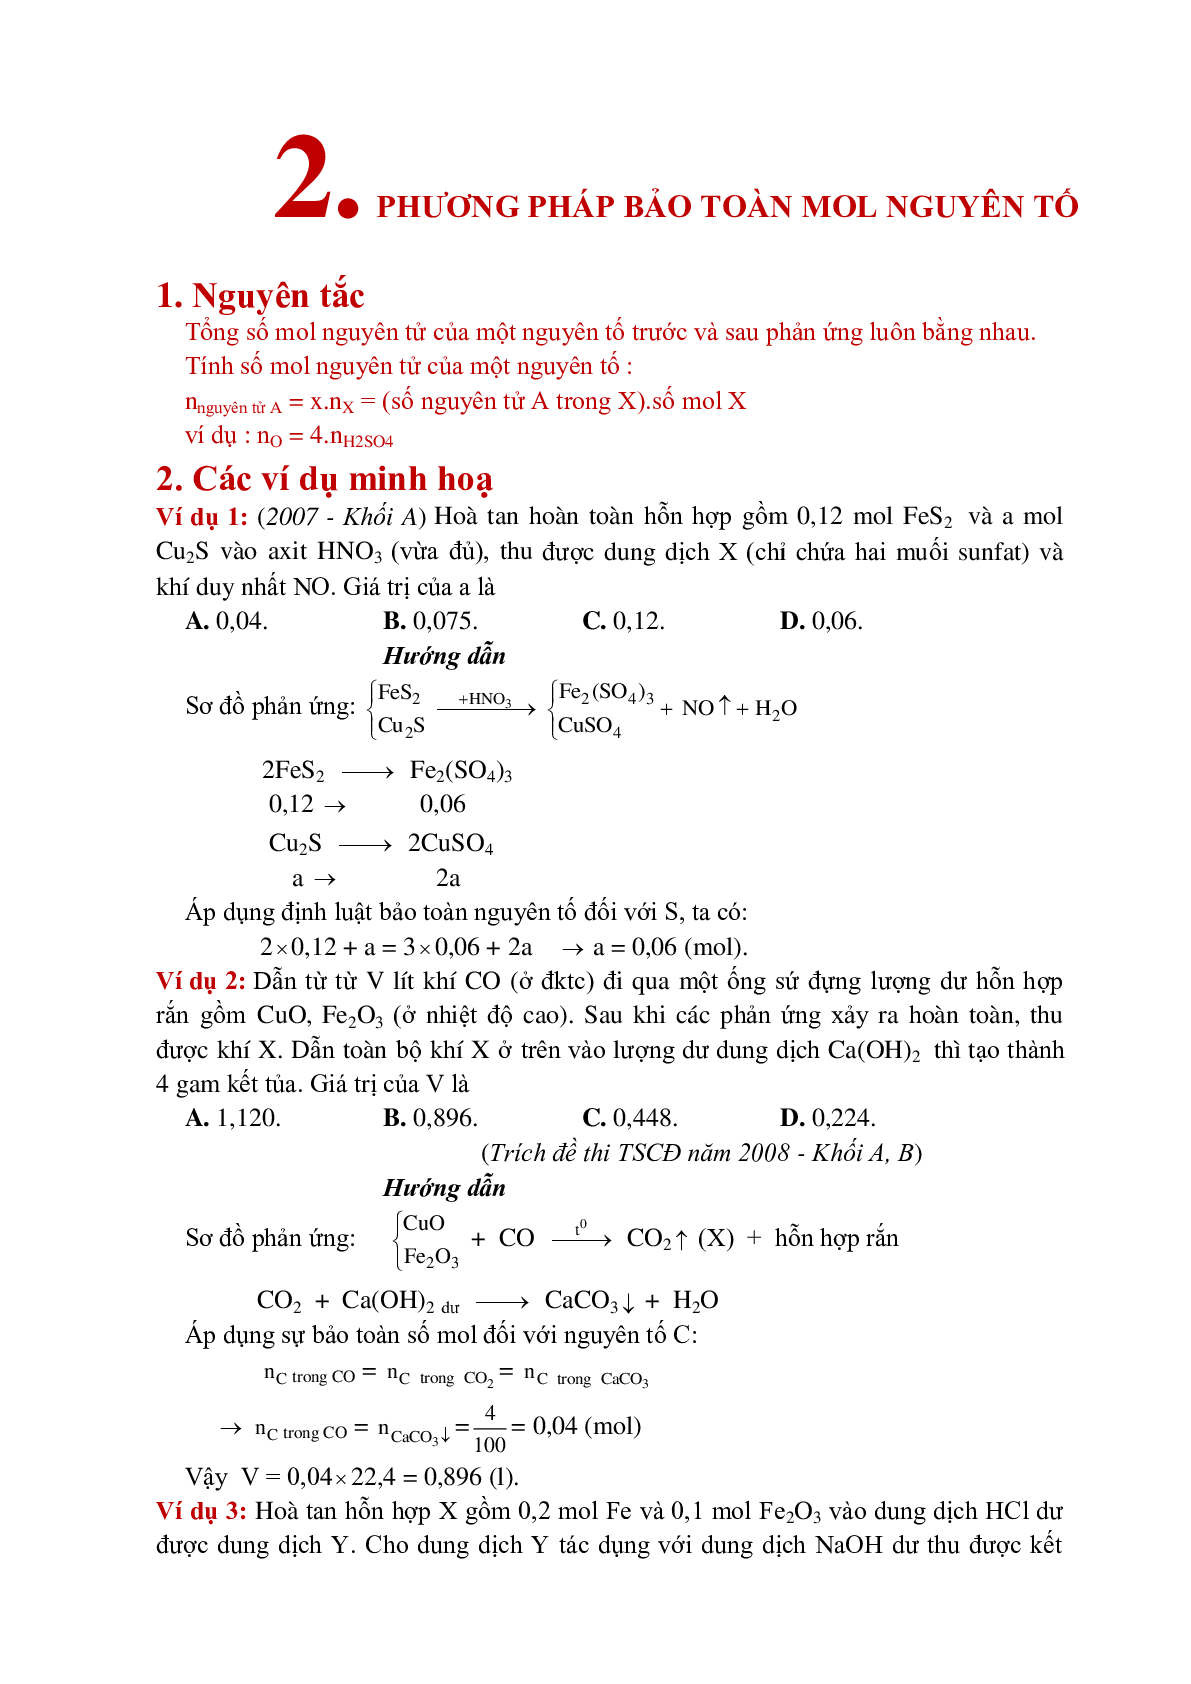 Lý thuyết, bài tập về Phương pháp bảo toàn khối lượng có đáp án (trang 5)